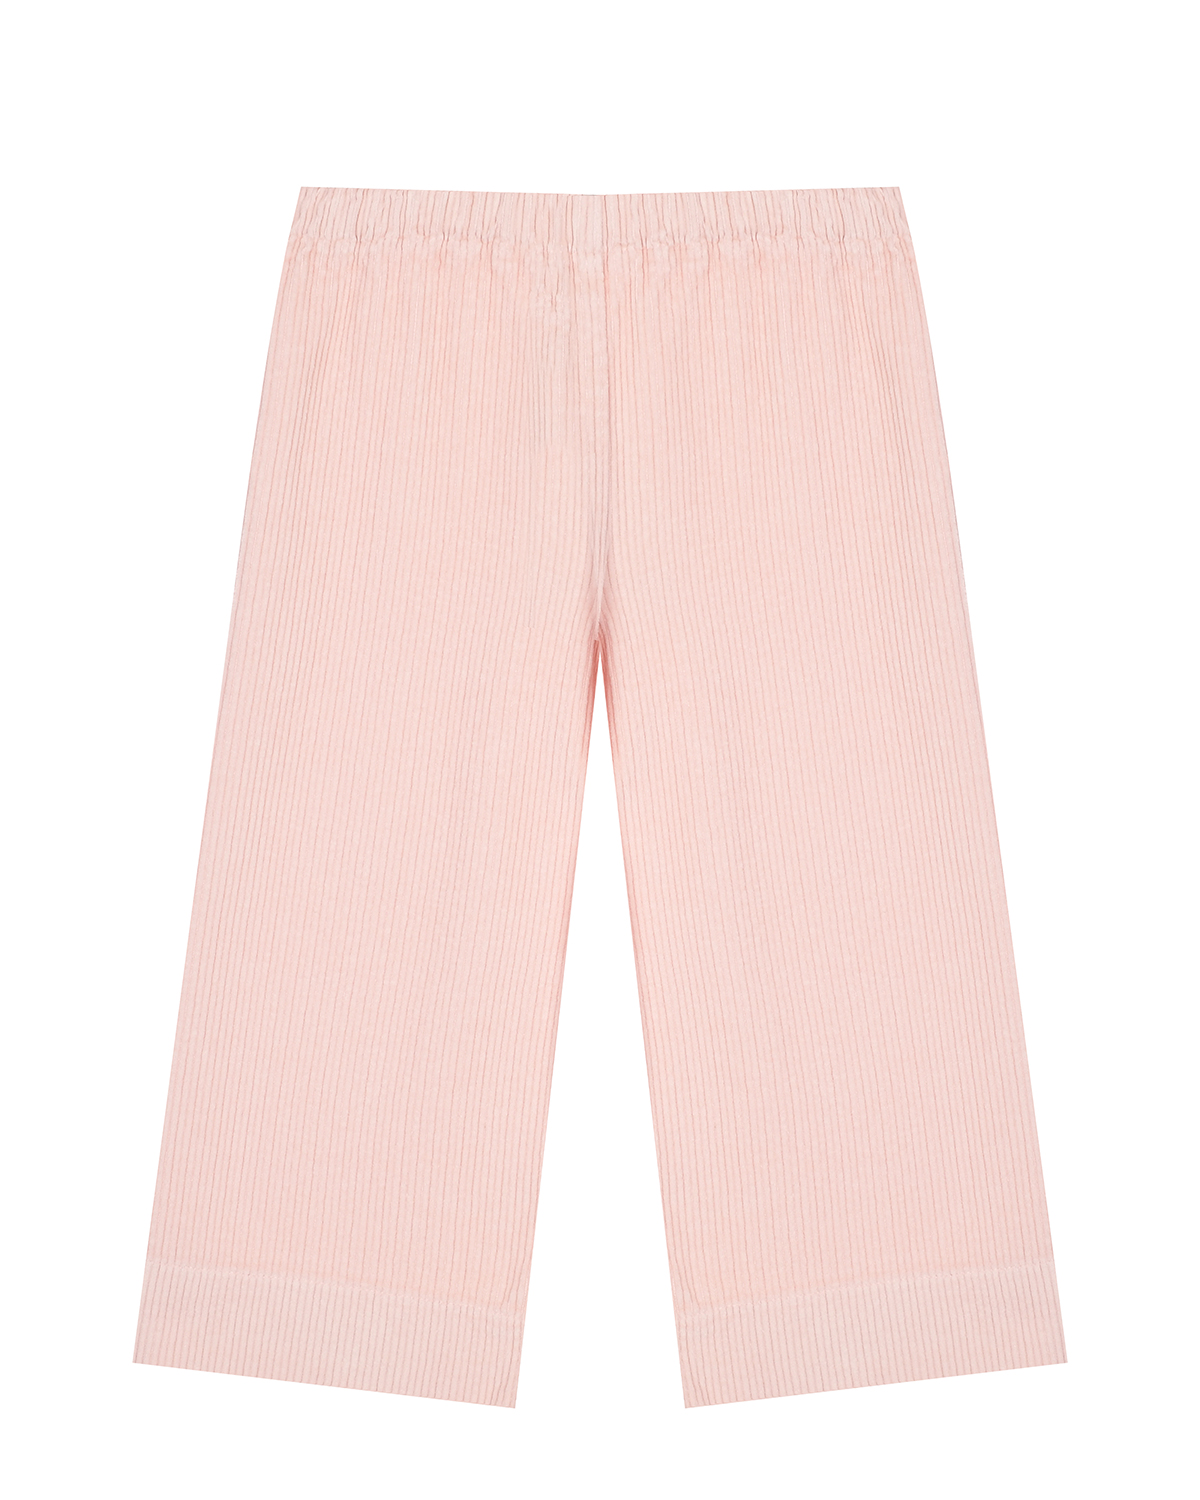 Розовые вельветовые брюки с поясом на резинке IL Gufo детские